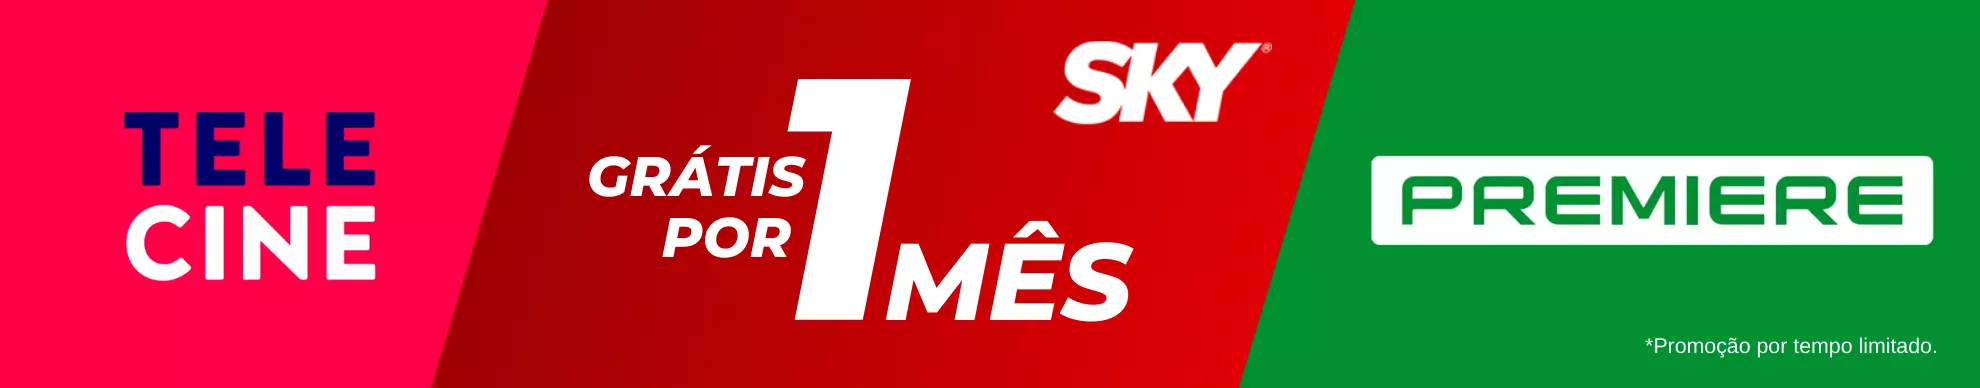 Banner Telecine e Premiere grátis por 1 mês na contratação junto com um plano SKY.